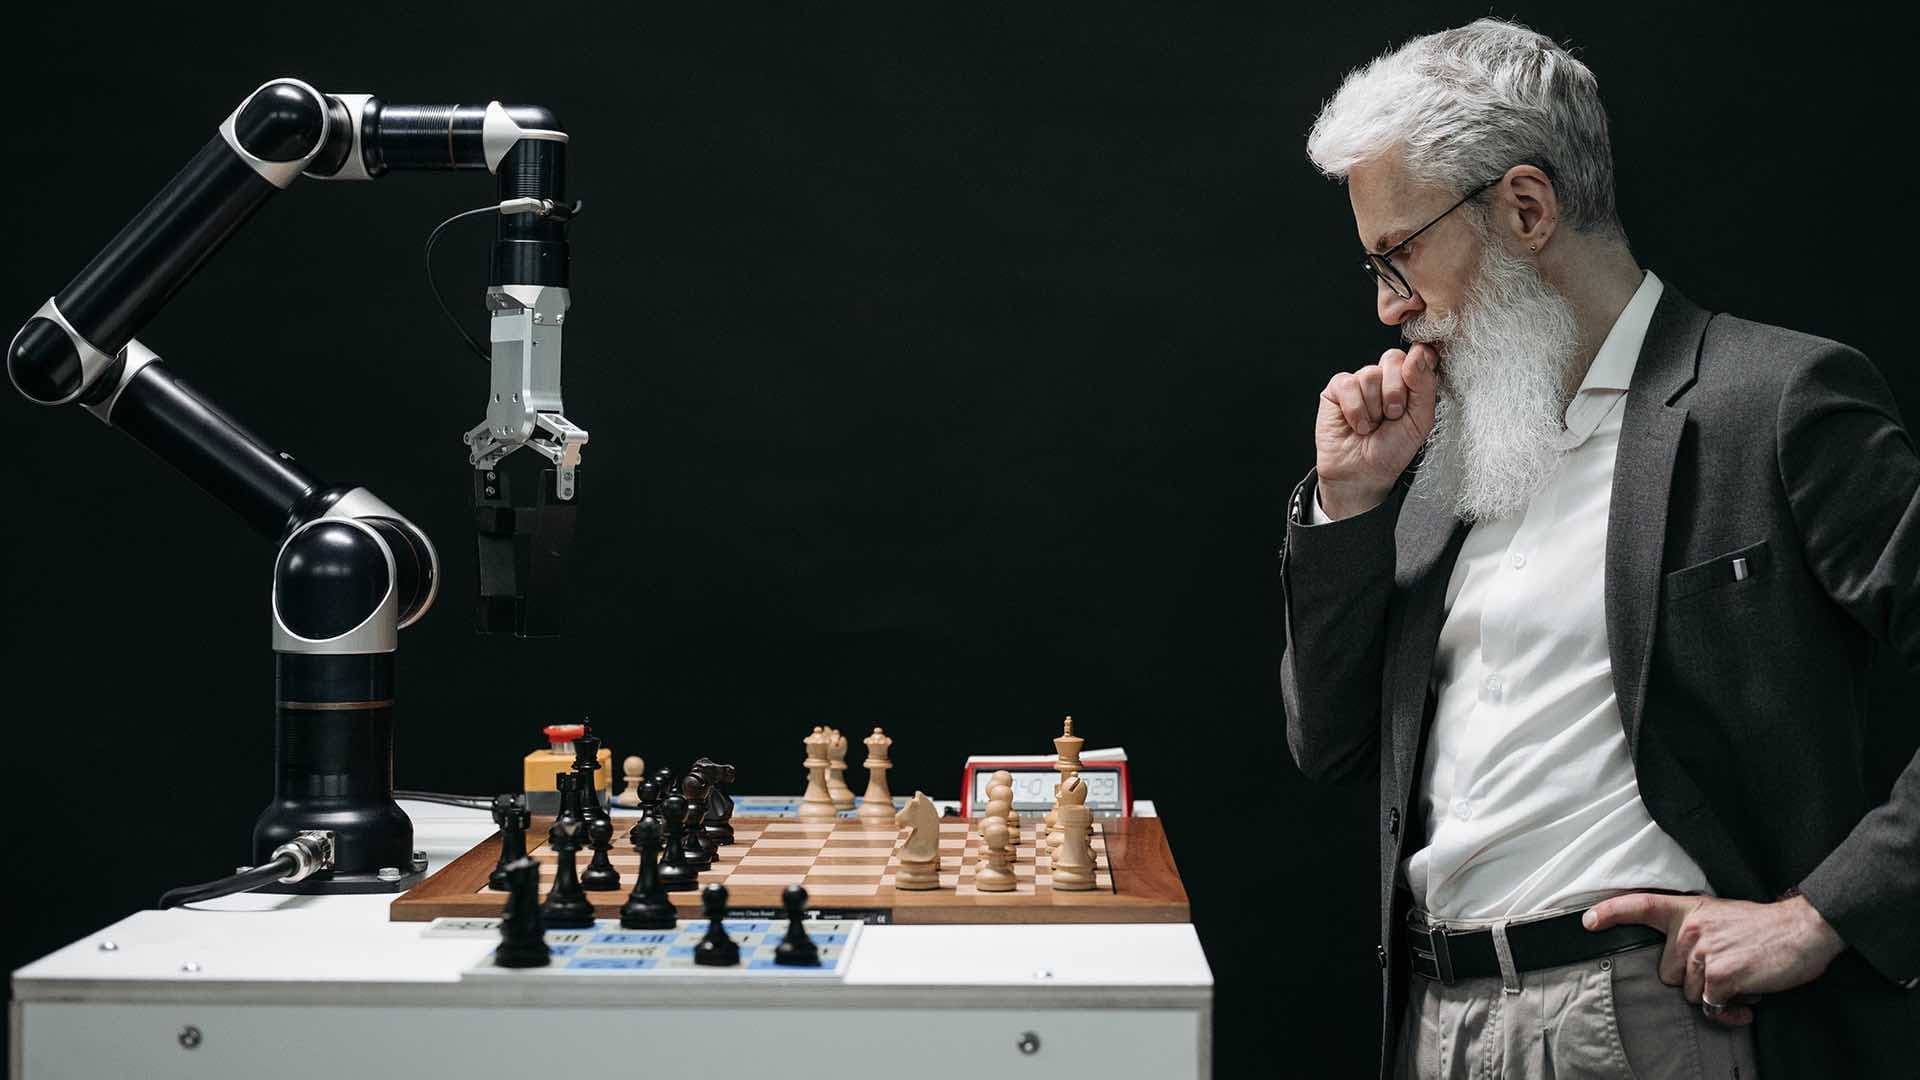 Man vs machine in a chess match.